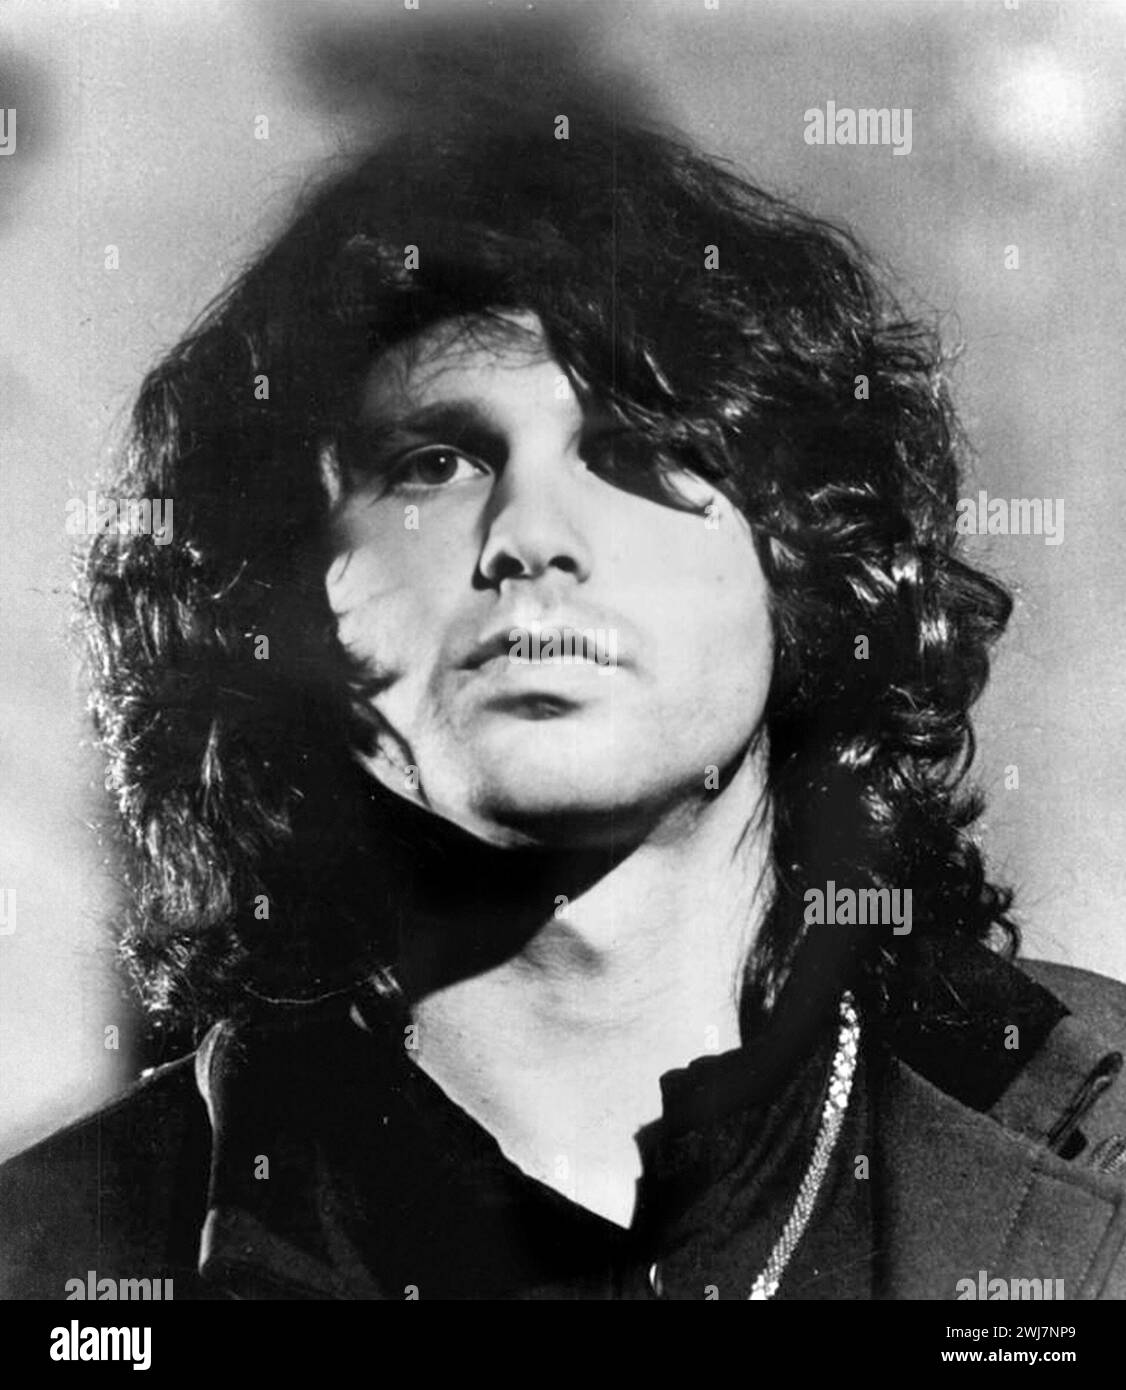 Jim Morrison. Ritratto del cantante e compositore americano James Douglas Morrison (1943-1971), foto pubblicitaria, 1968. Morrison era il cantante principale dei Doors. Foto Stock